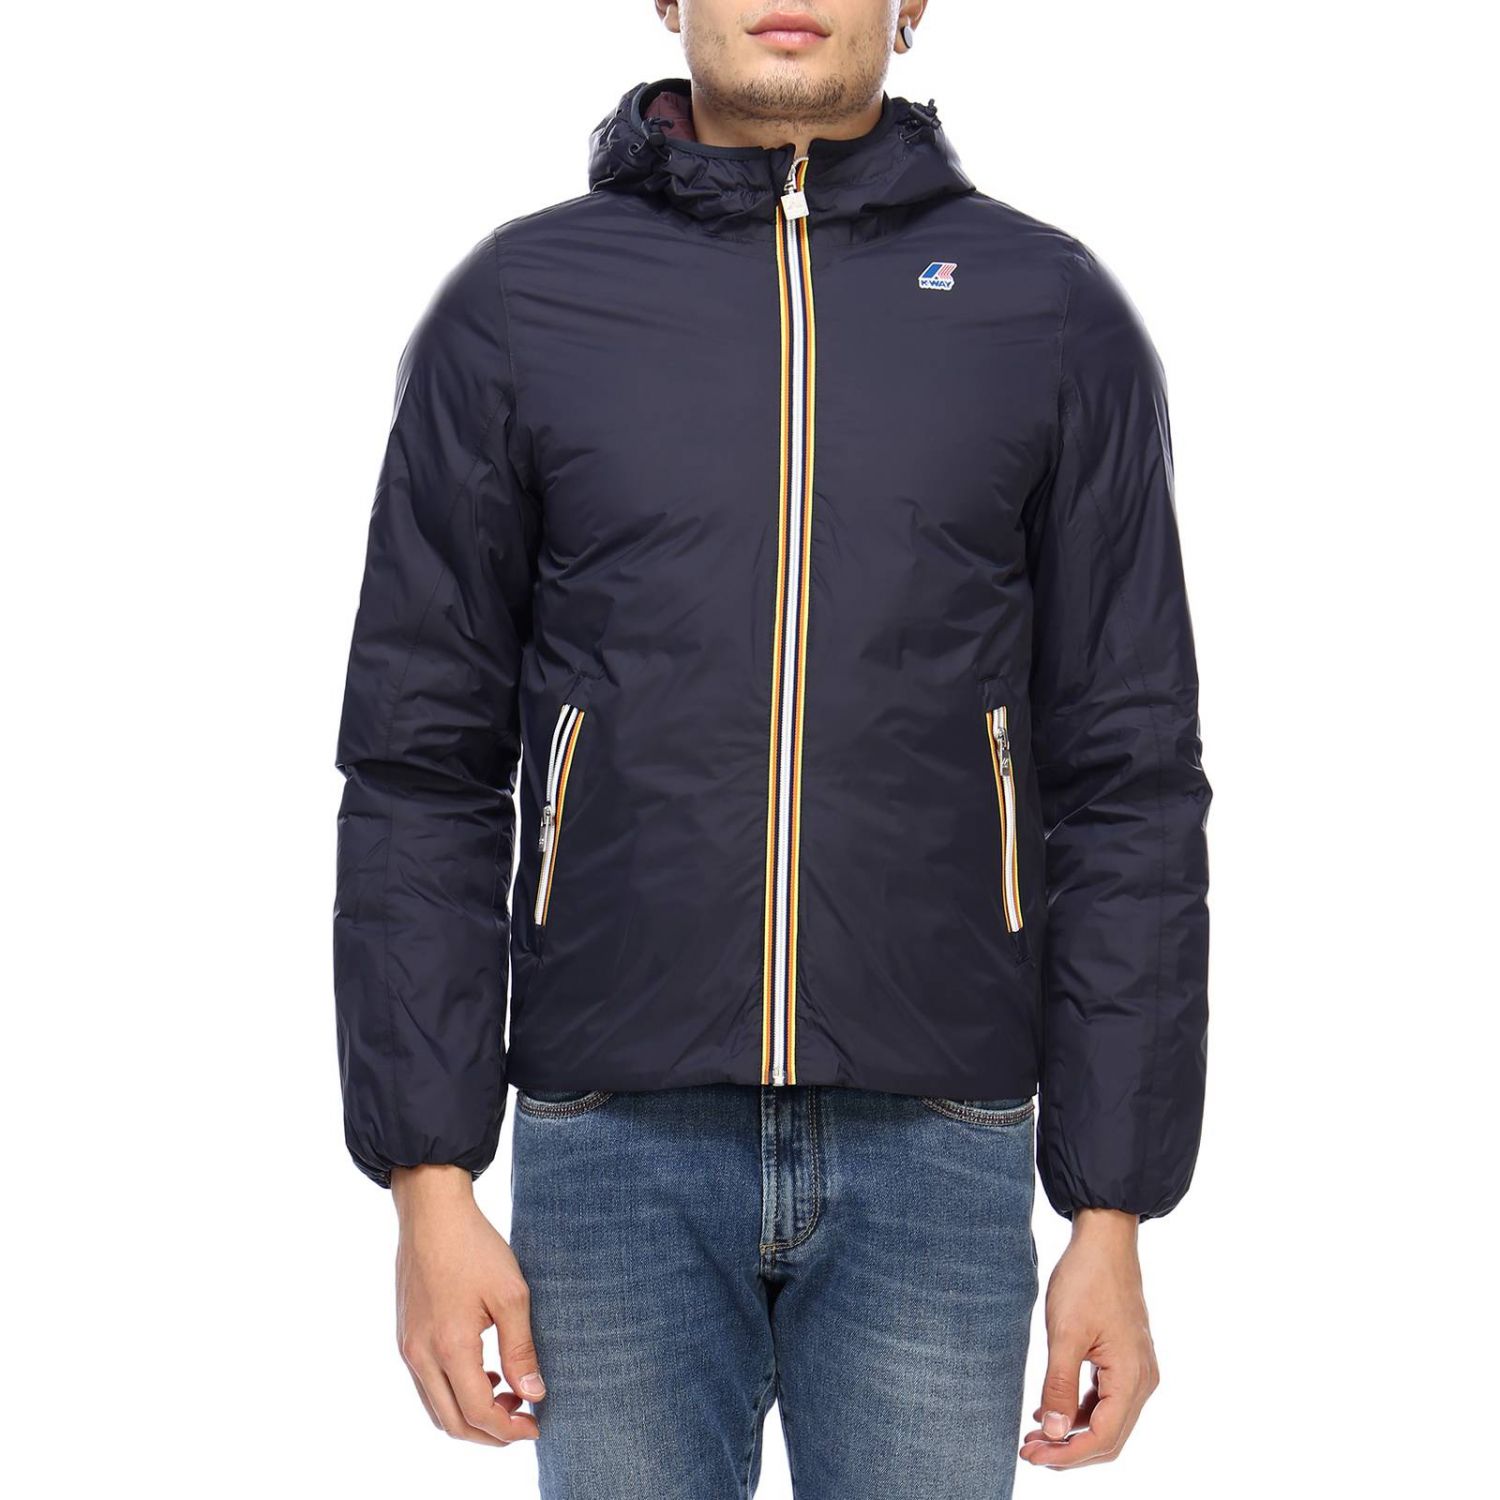 K-Way Outlet: jacket for men - Blue 1 | K-Way jacket K001K40 online on ...